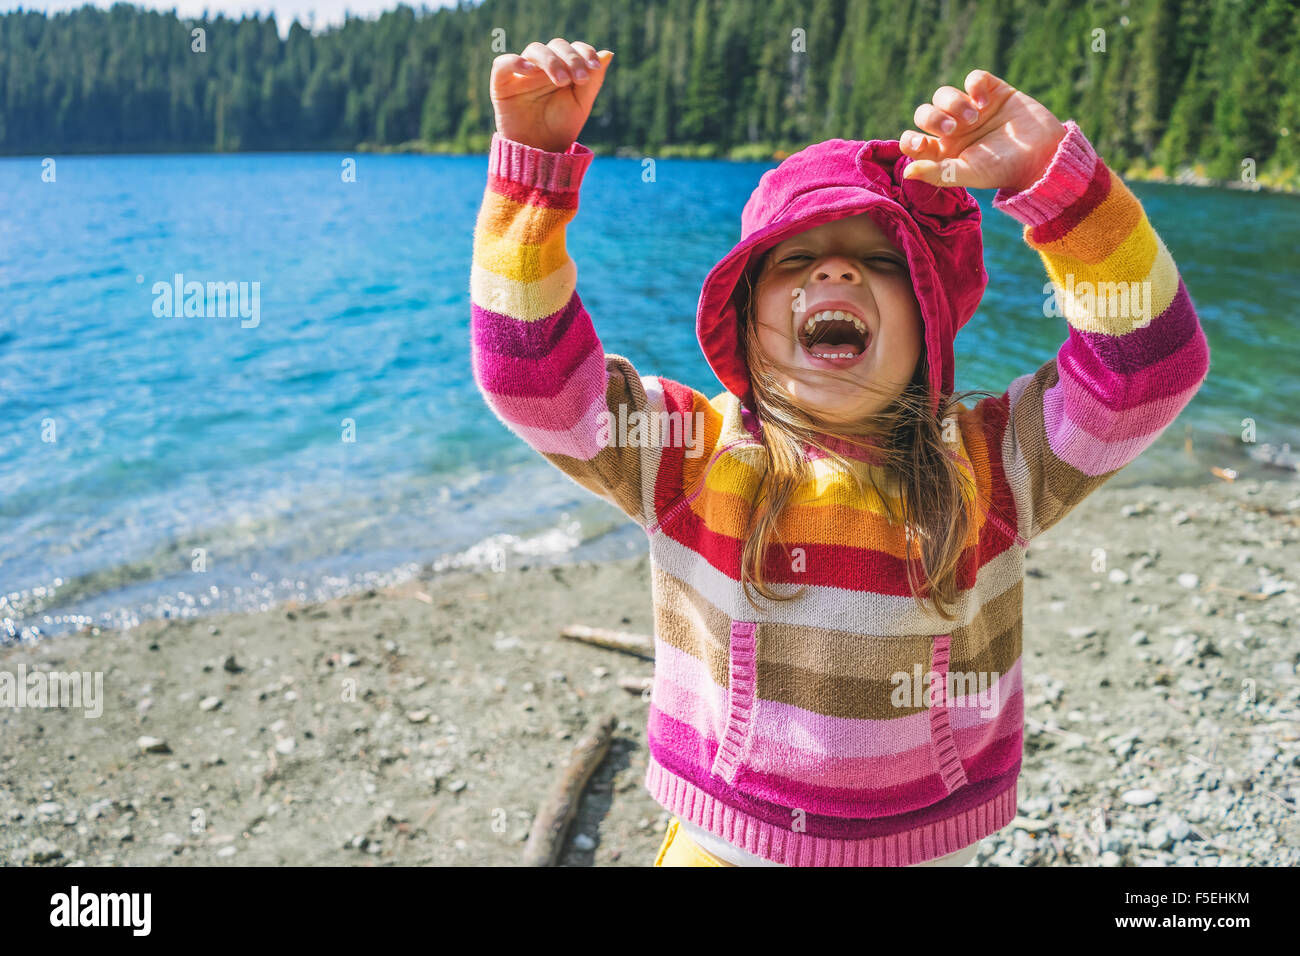 Jeune fille rire avec ses bras en l'air Banque D'Images